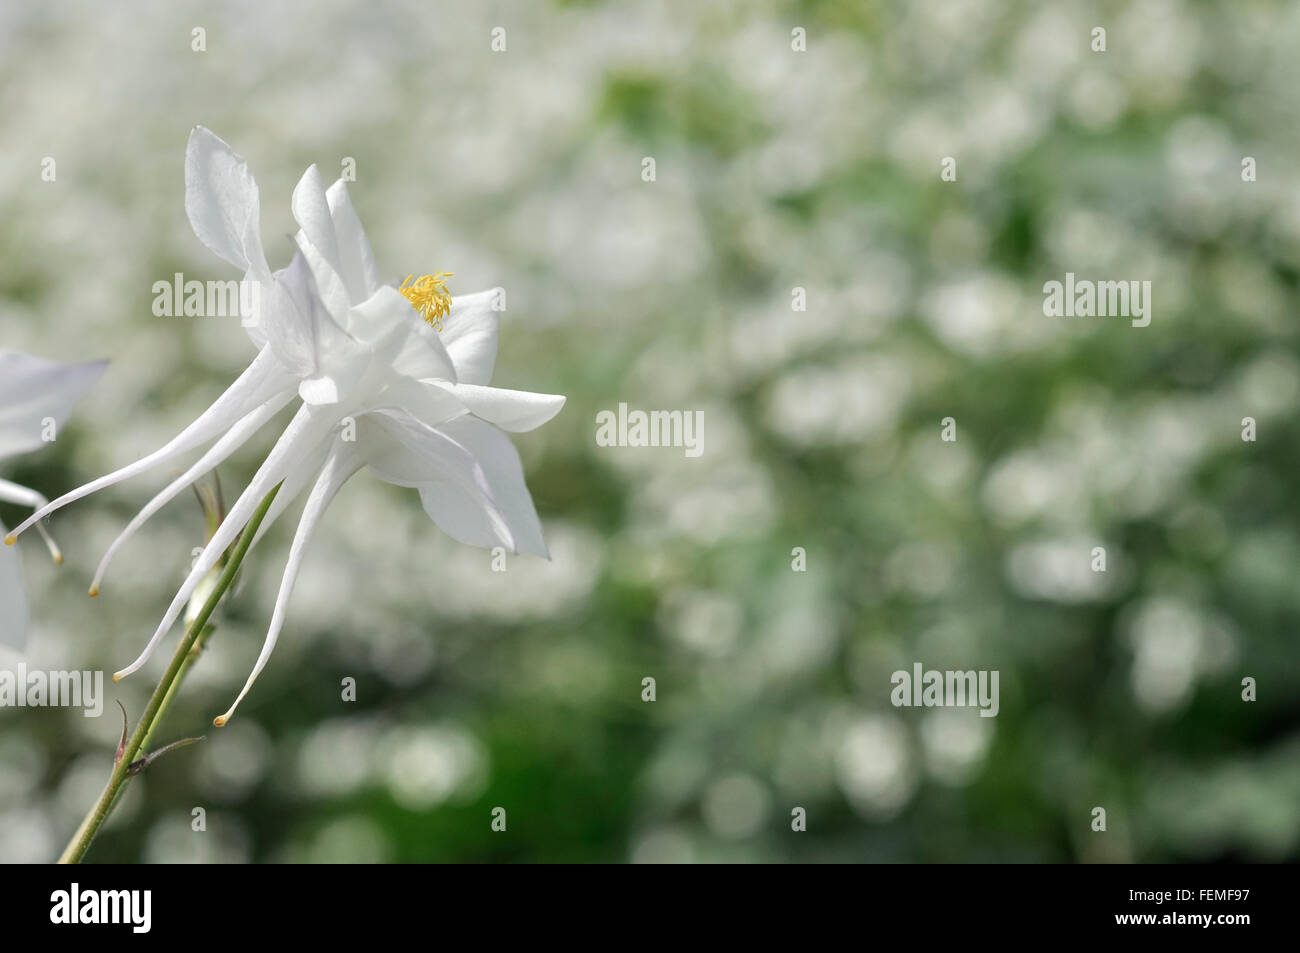 Reine weiße Aquilegia Blume mit langen Sporen. Weichen, unscharfen Hintergrund von Grün und weiß. Stockfoto